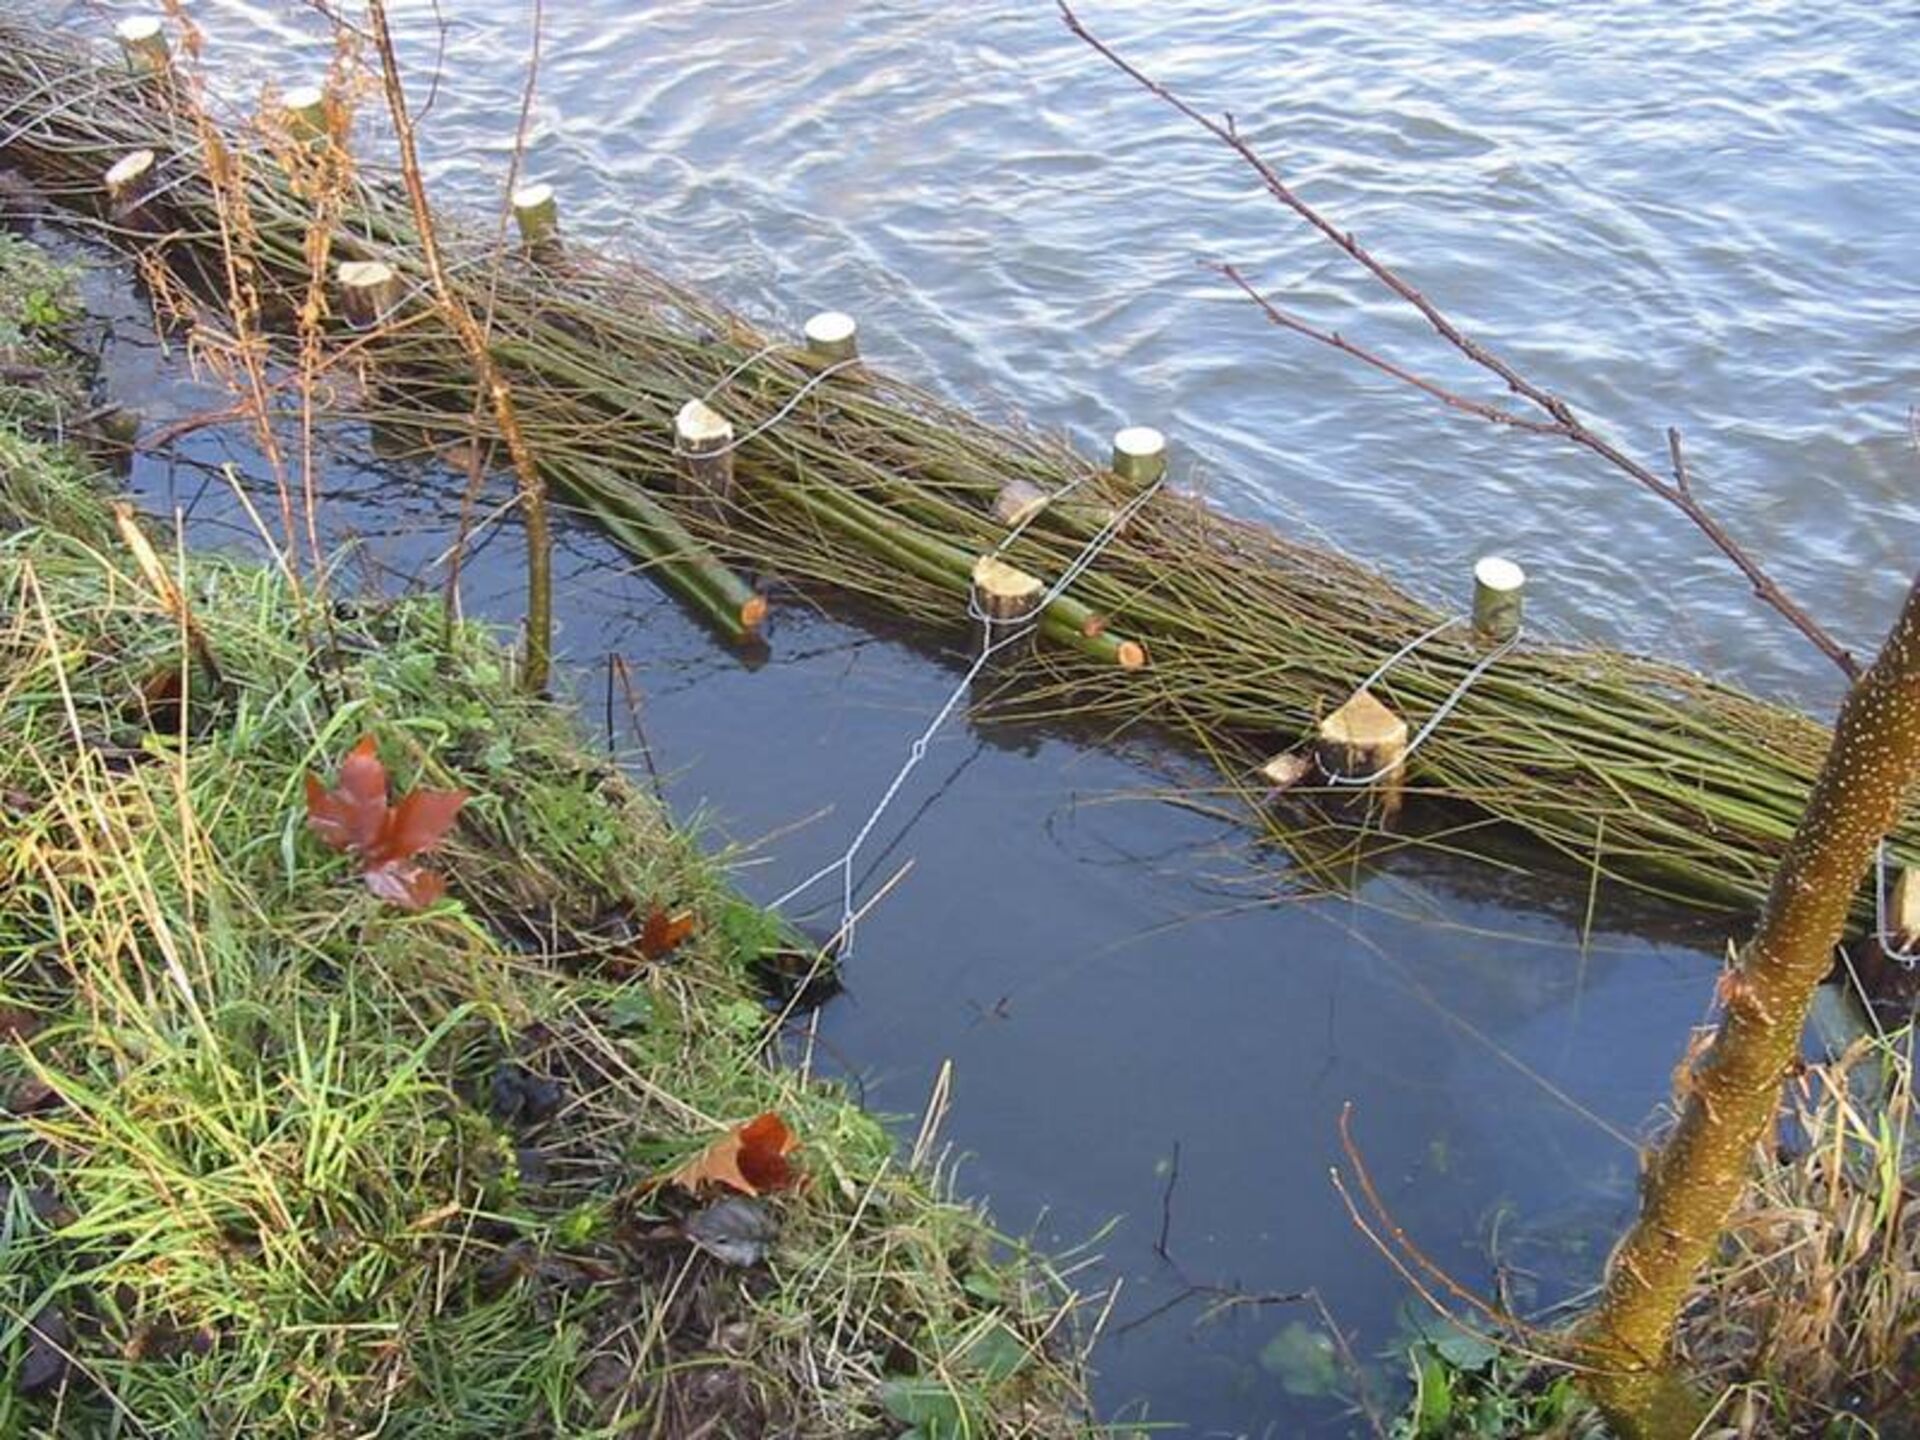  Mit Faschinen lassen sich monotone Gewässerufer relativ rasch und günstig aufwerten. Ihre reichhaltige Struktur bietet viel potenziellen Lebensraum für Kleintiere und Jungfische.  